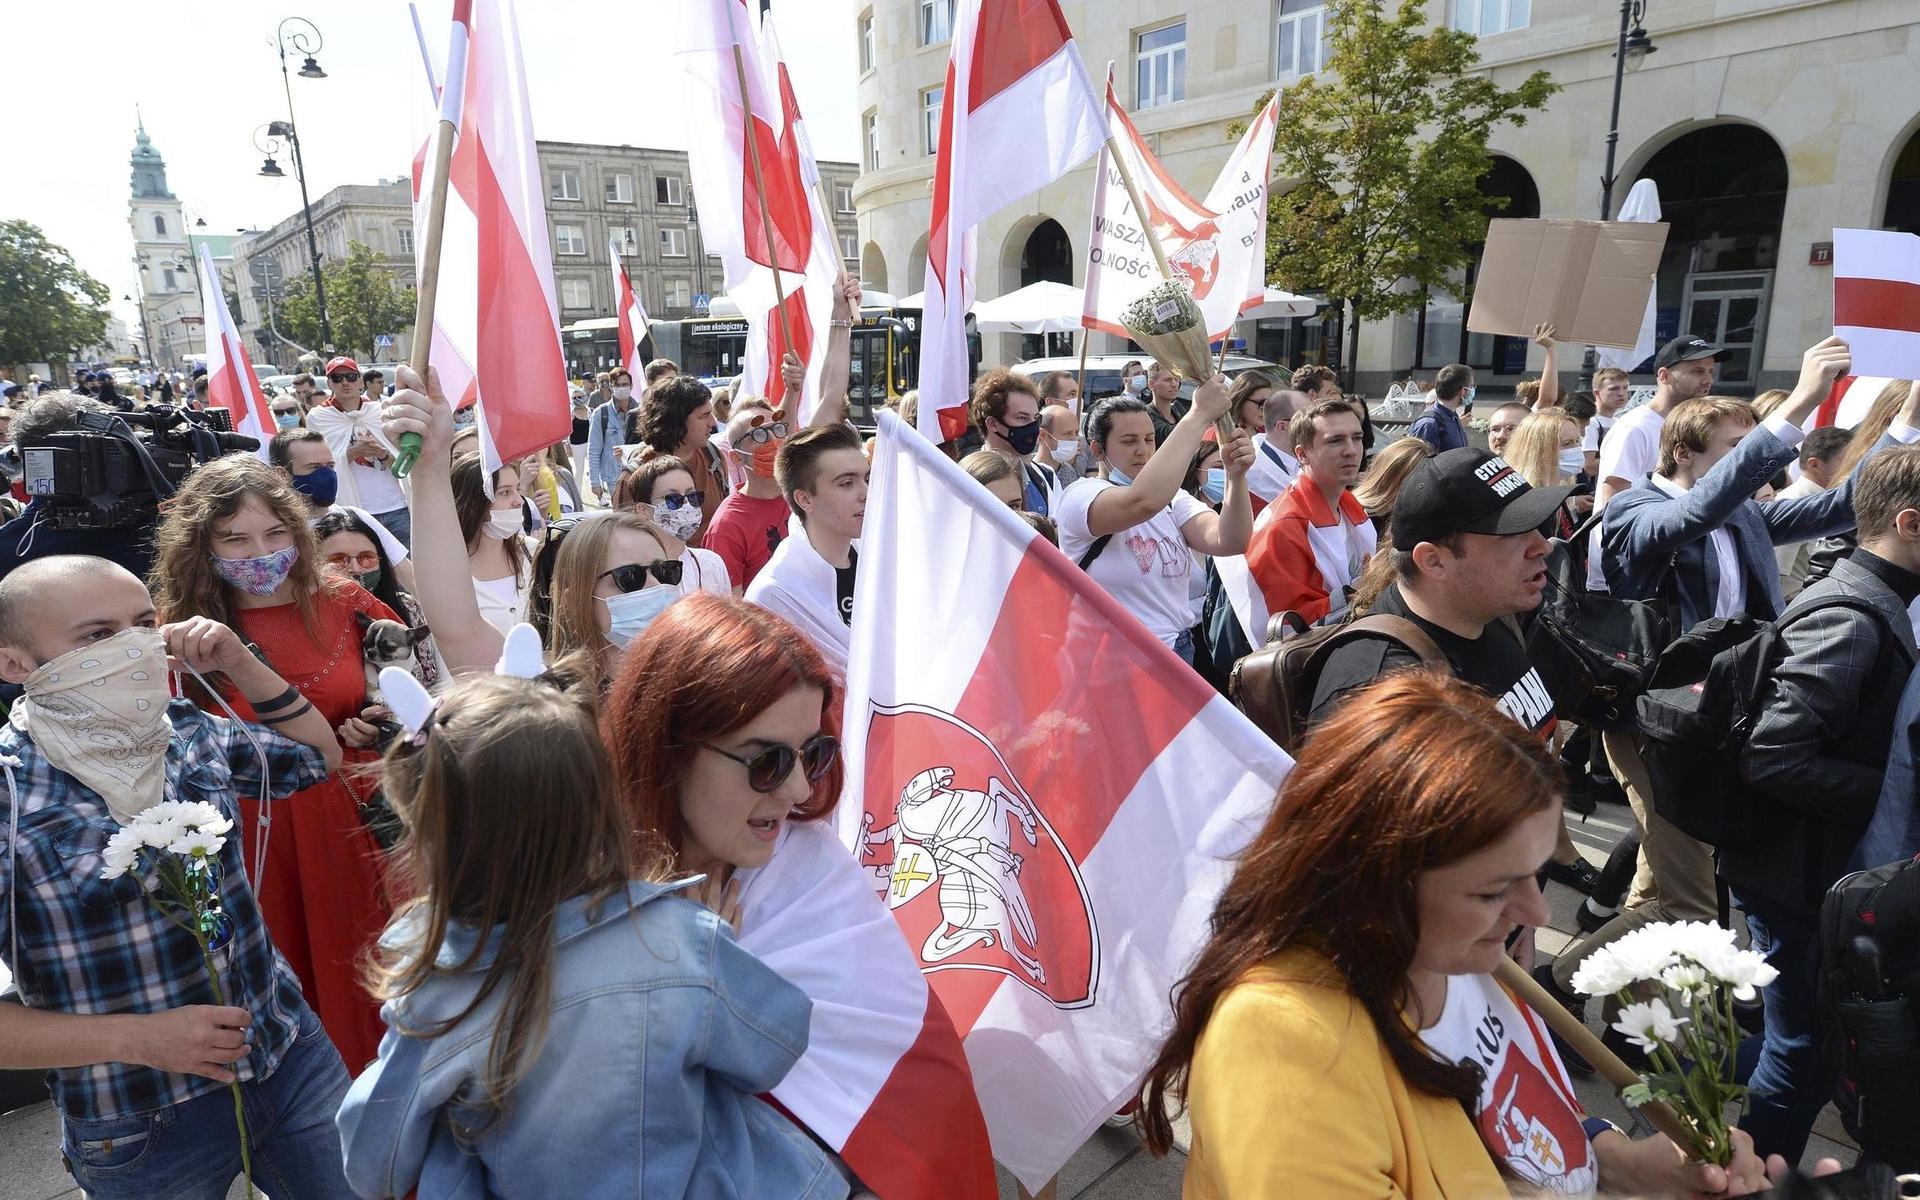  Den här vitröda flaggan används ofta av demonstranter i Belarus som kämpar mot regimen och Aleksandr Lukasjenko. 